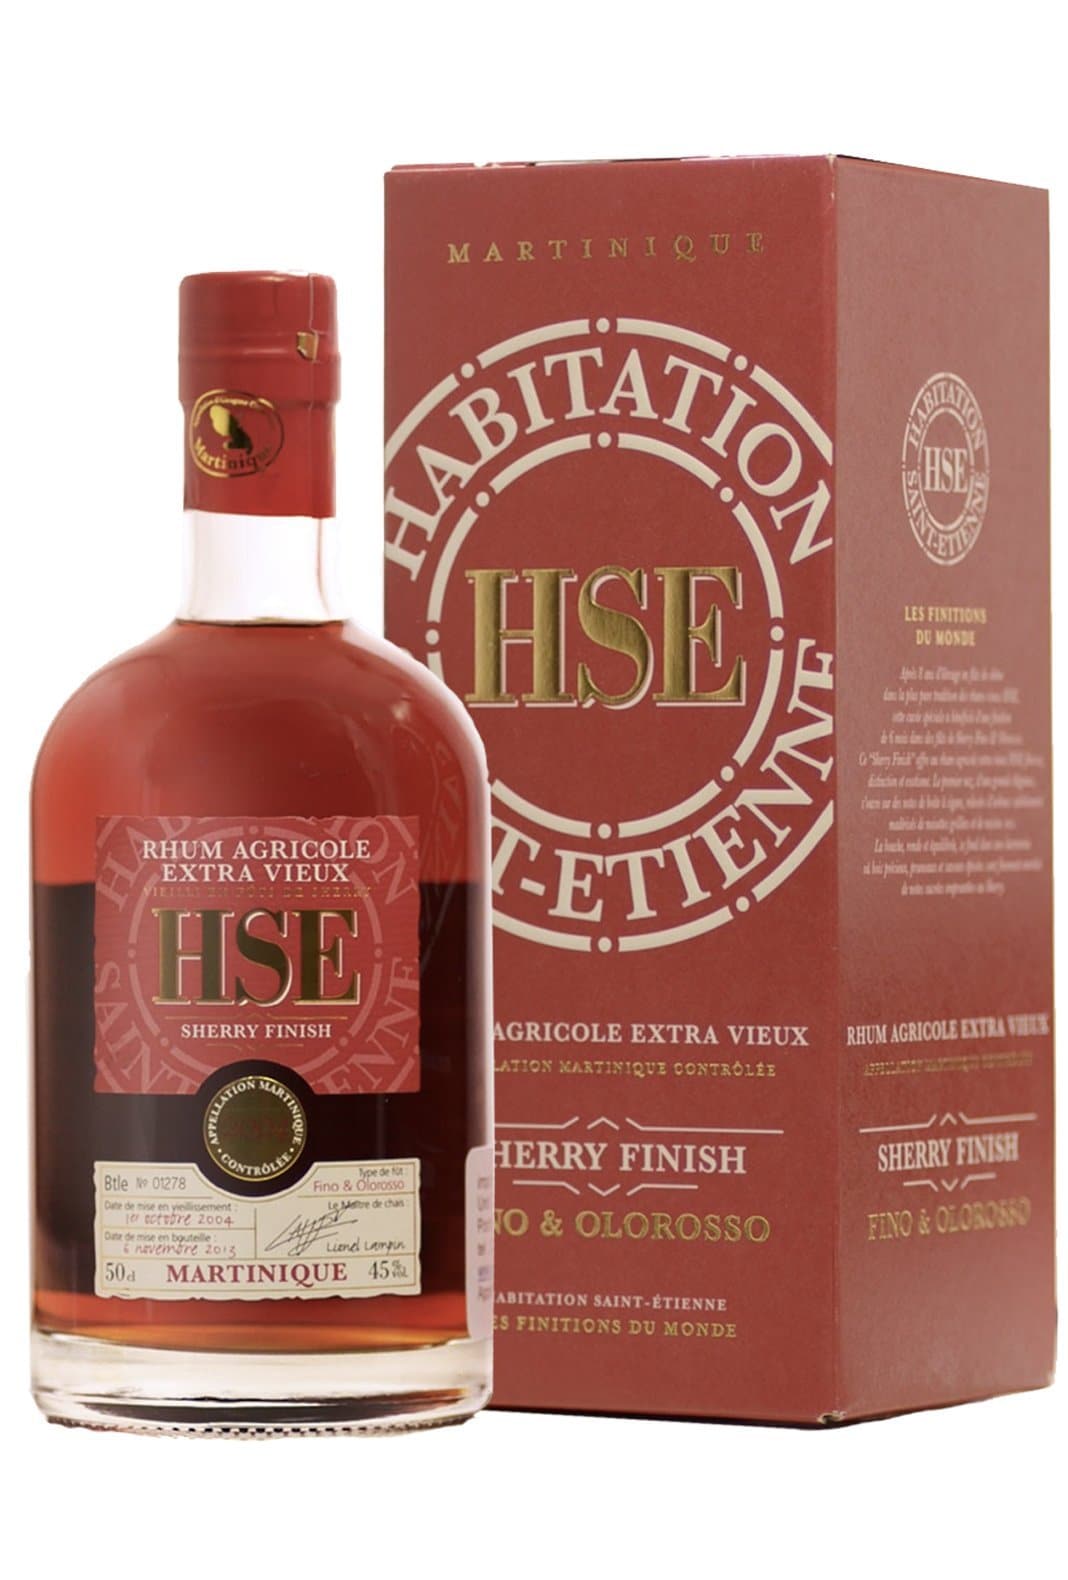 Habitation HSE Whisky Rozelieures 2013 Cask Finish Rhum Agricole